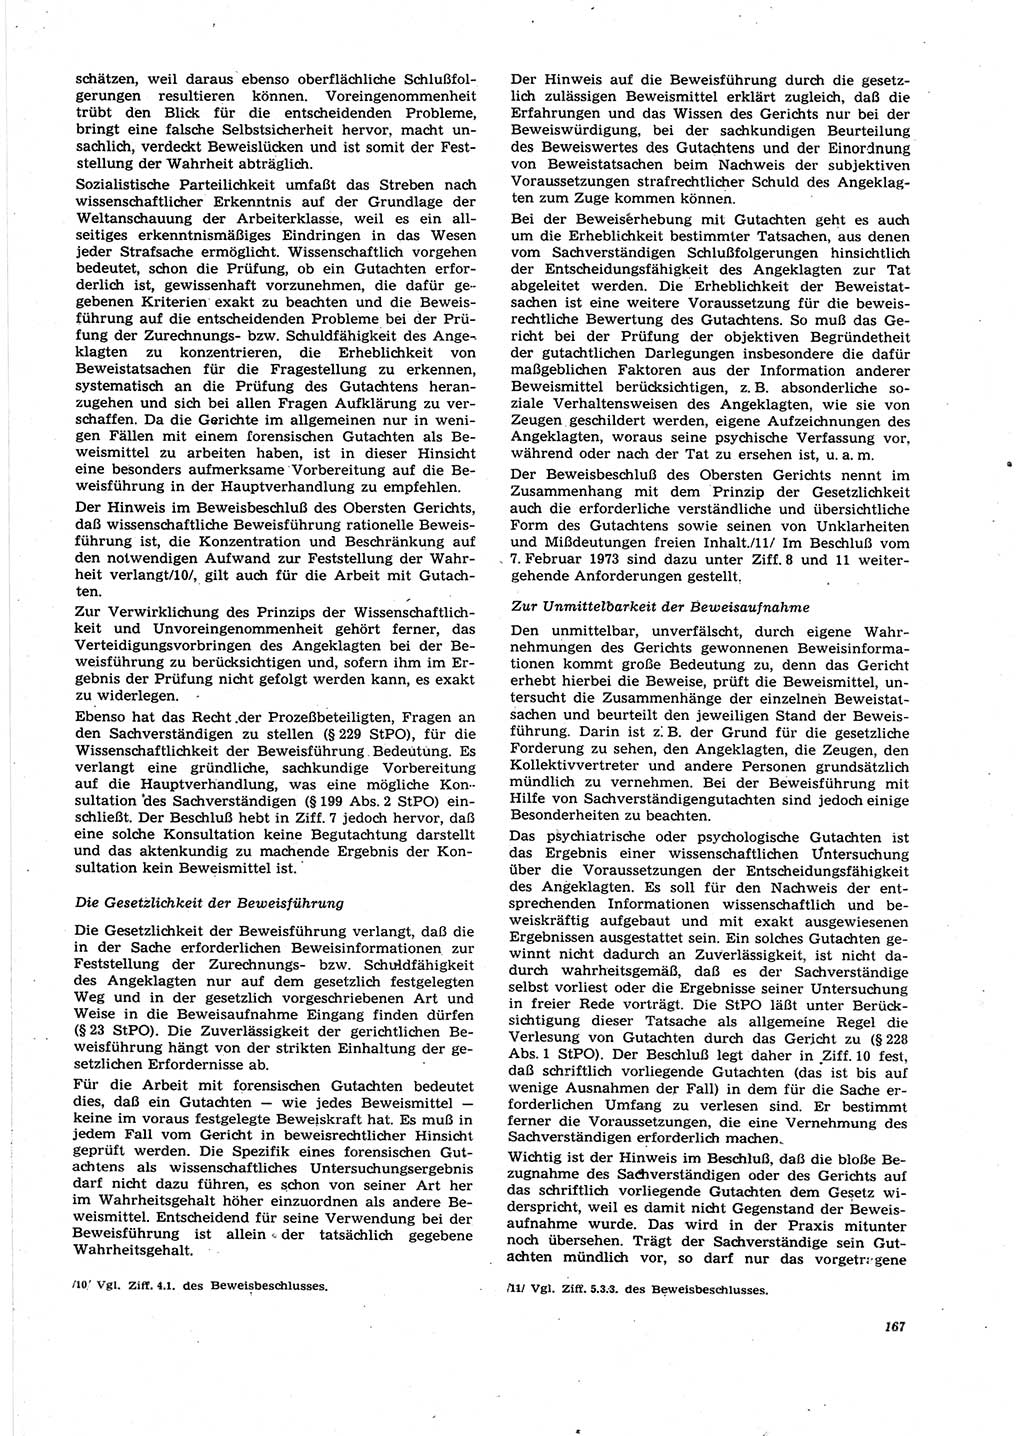 Neue Justiz (NJ), Zeitschrift für Recht und Rechtswissenschaft [Deutsche Demokratische Republik (DDR)], 27. Jahrgang 1973, Seite 167 (NJ DDR 1973, S. 167)